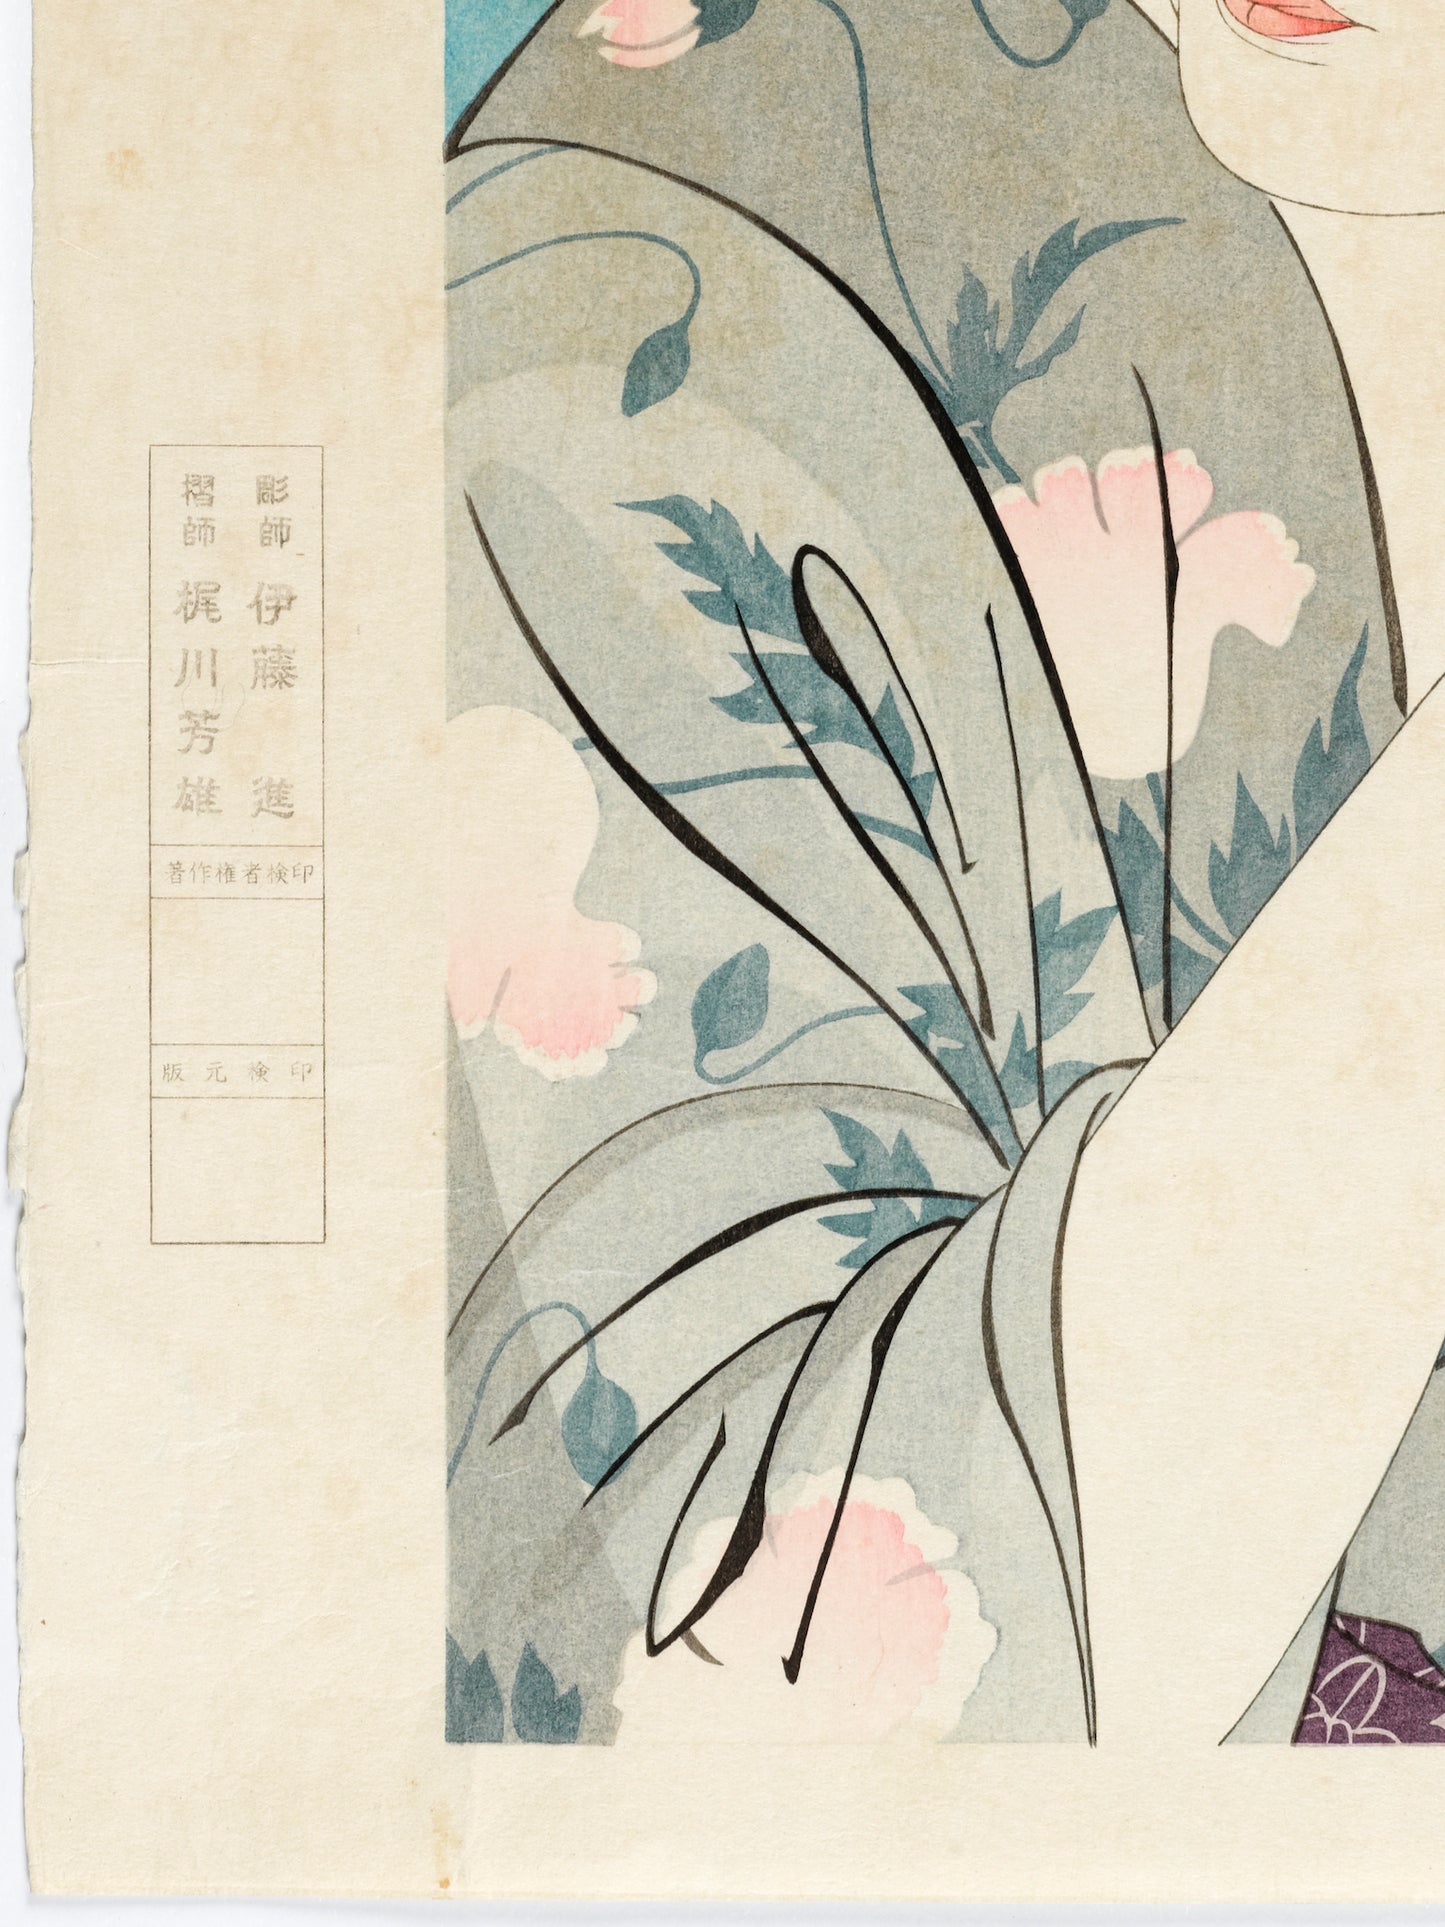 estampe japonaise de Torii Kotondo, série 12 aspects des femmes, numéro 1 Woman combing hair, femme se brossant les cheveux, kimono et cartouche graveur et imprimeur